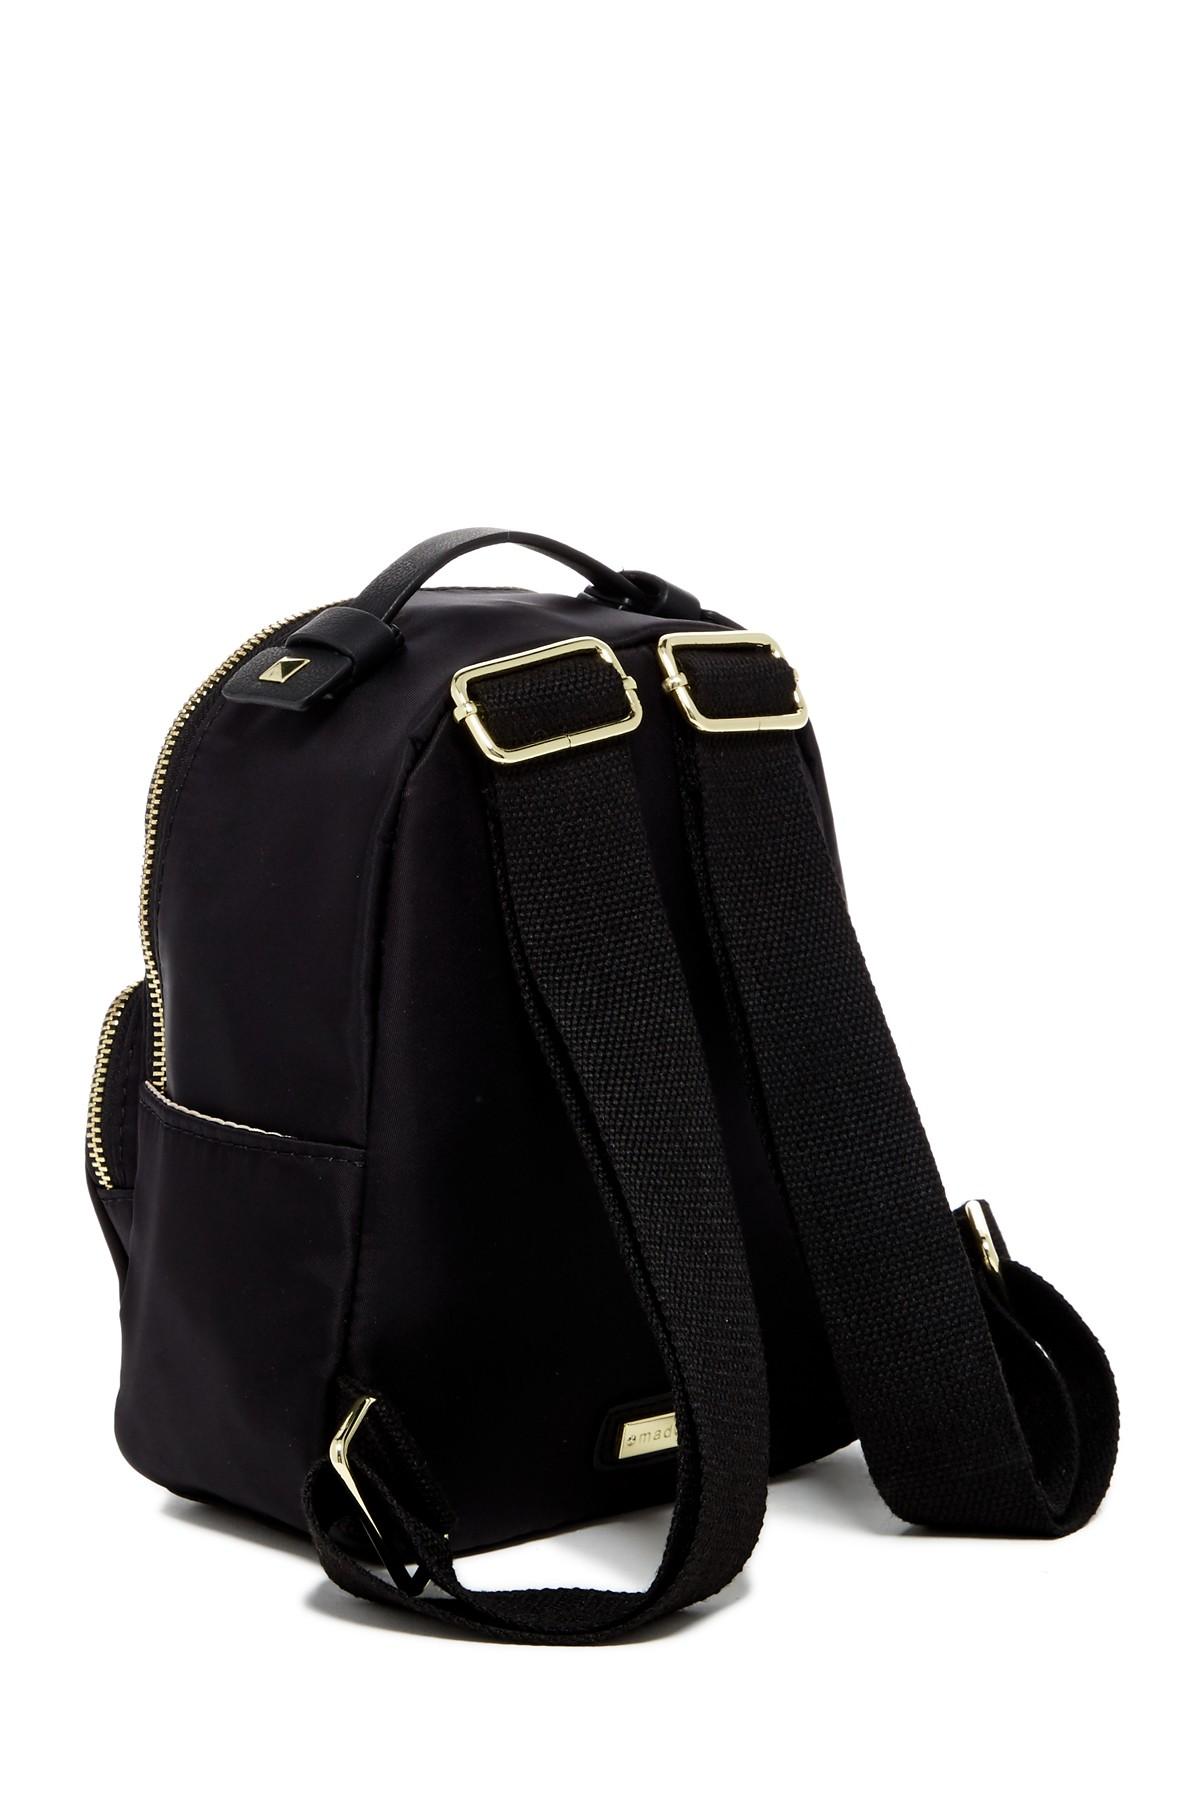 Lyst - Madden Girl Mini Nylon Backpack in Black